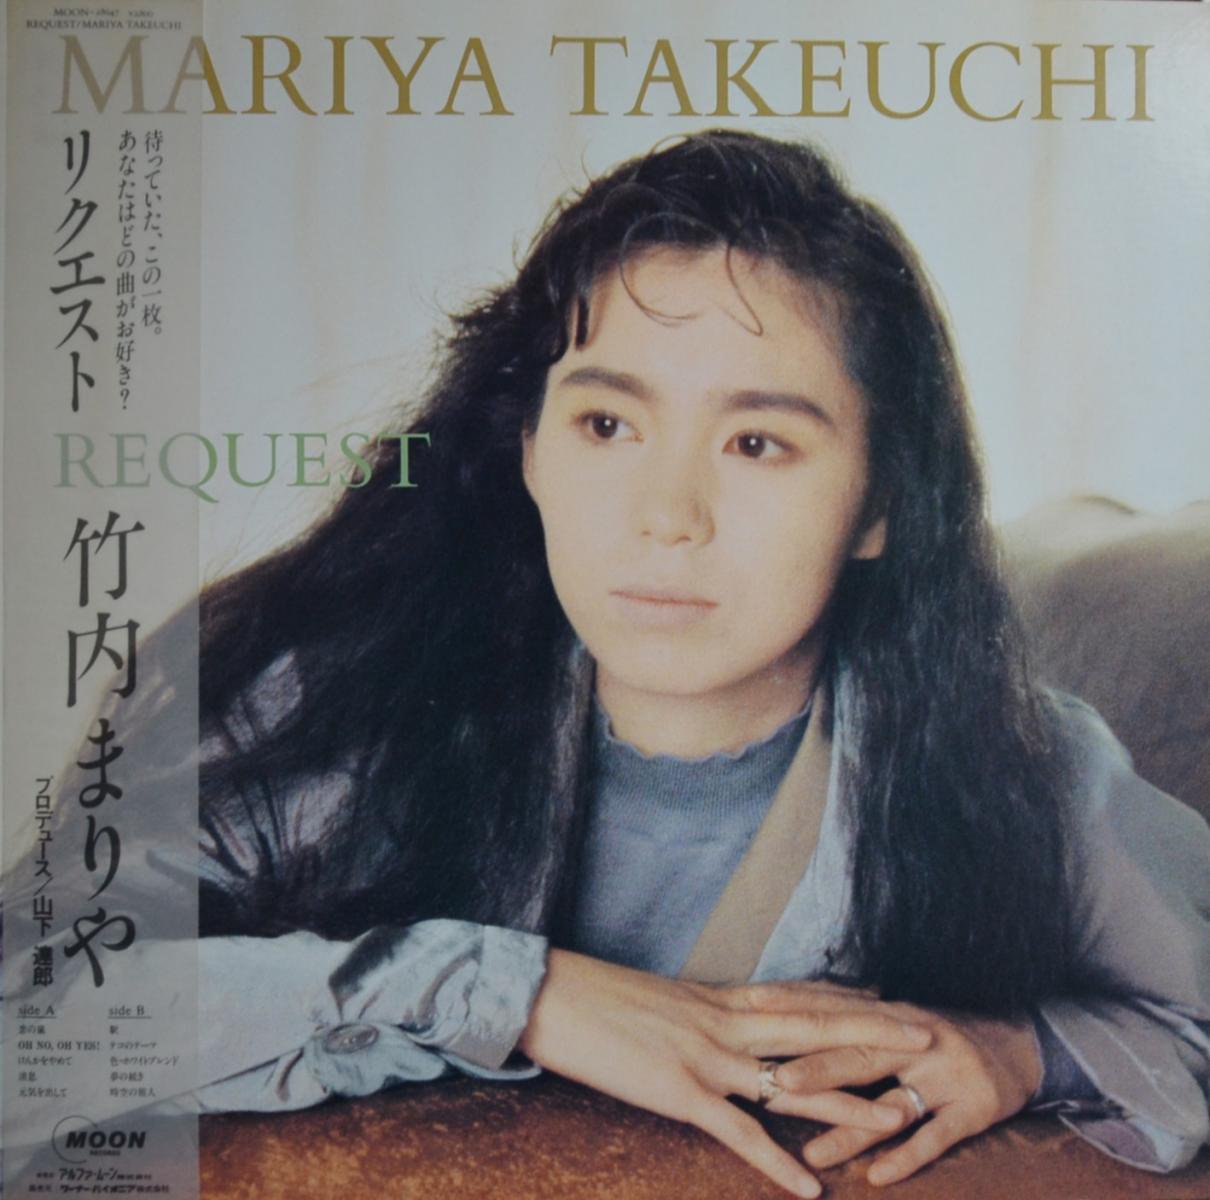 竹内まりや MARIYA TAKEUCHI / リクエスト REQUEST (LP) - HIP TANK 